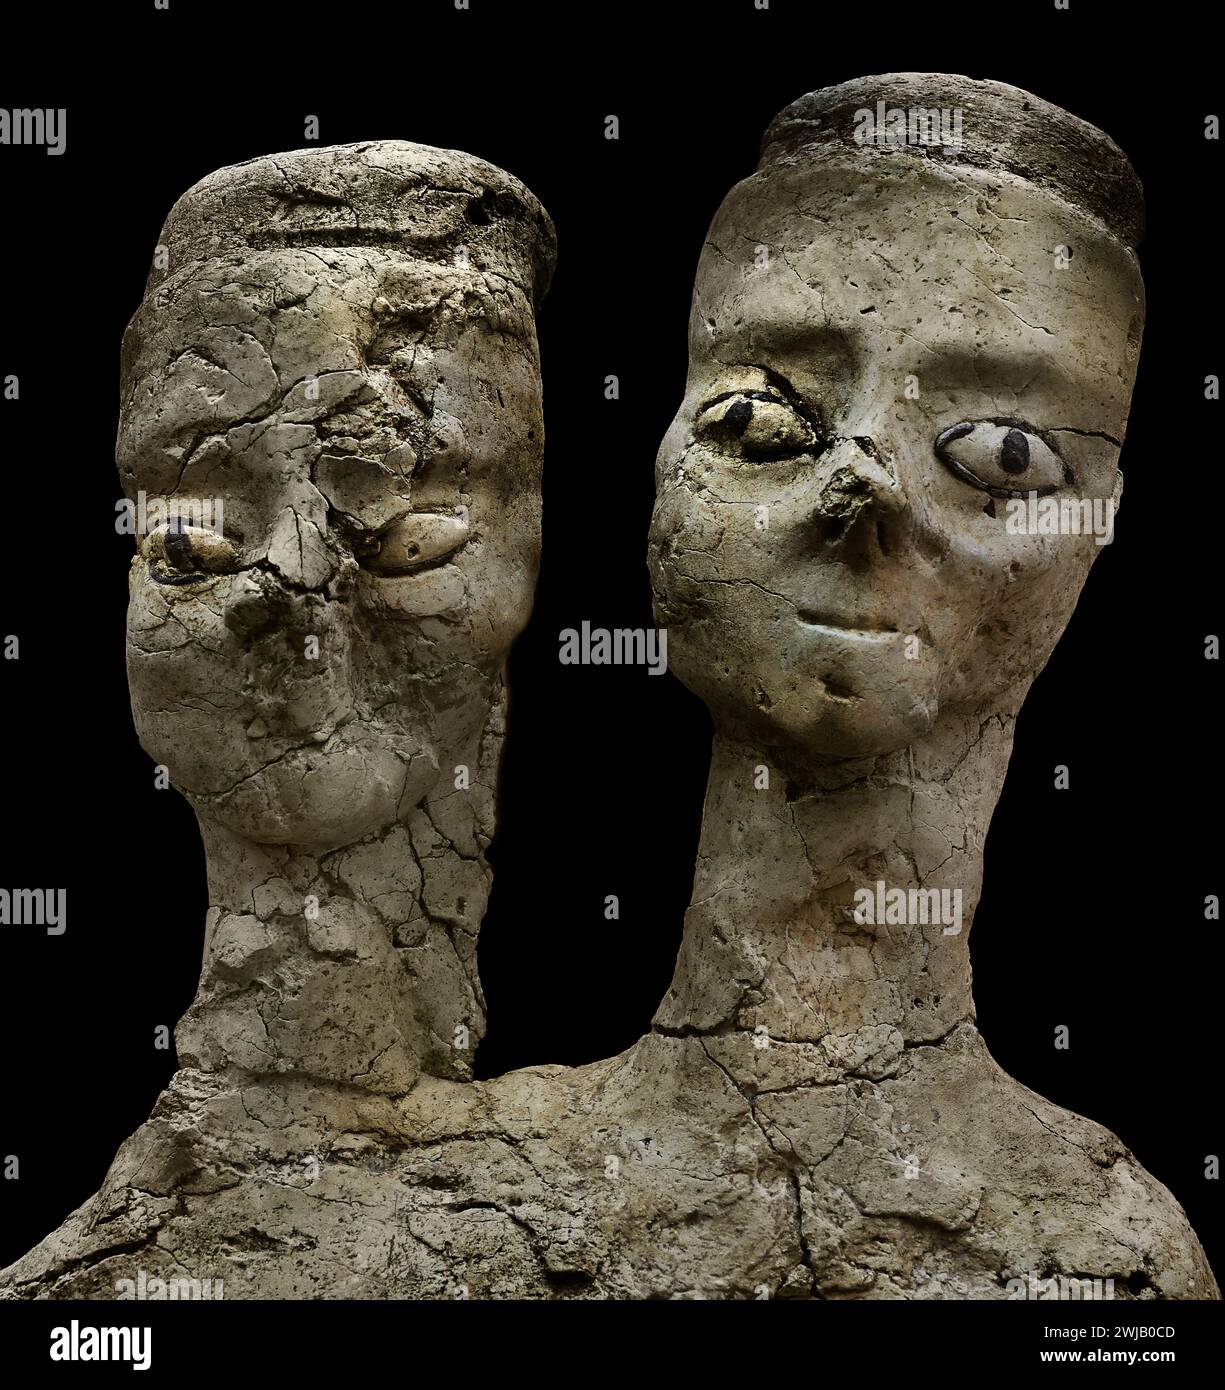 Kopfstatue - Gipsstatuen 7700-7500 v. Chr. Ain Ghazal Neolithikum Jordan Amman 7250 - 5000 v. Chr. ist eine neolithische archäologische Stätte unter den ältesten großen Statuen, die jemals entdeckt wurden. Diese Statue war aus Kalkputz, Schilf und Bitumen gefertigt Stockfoto